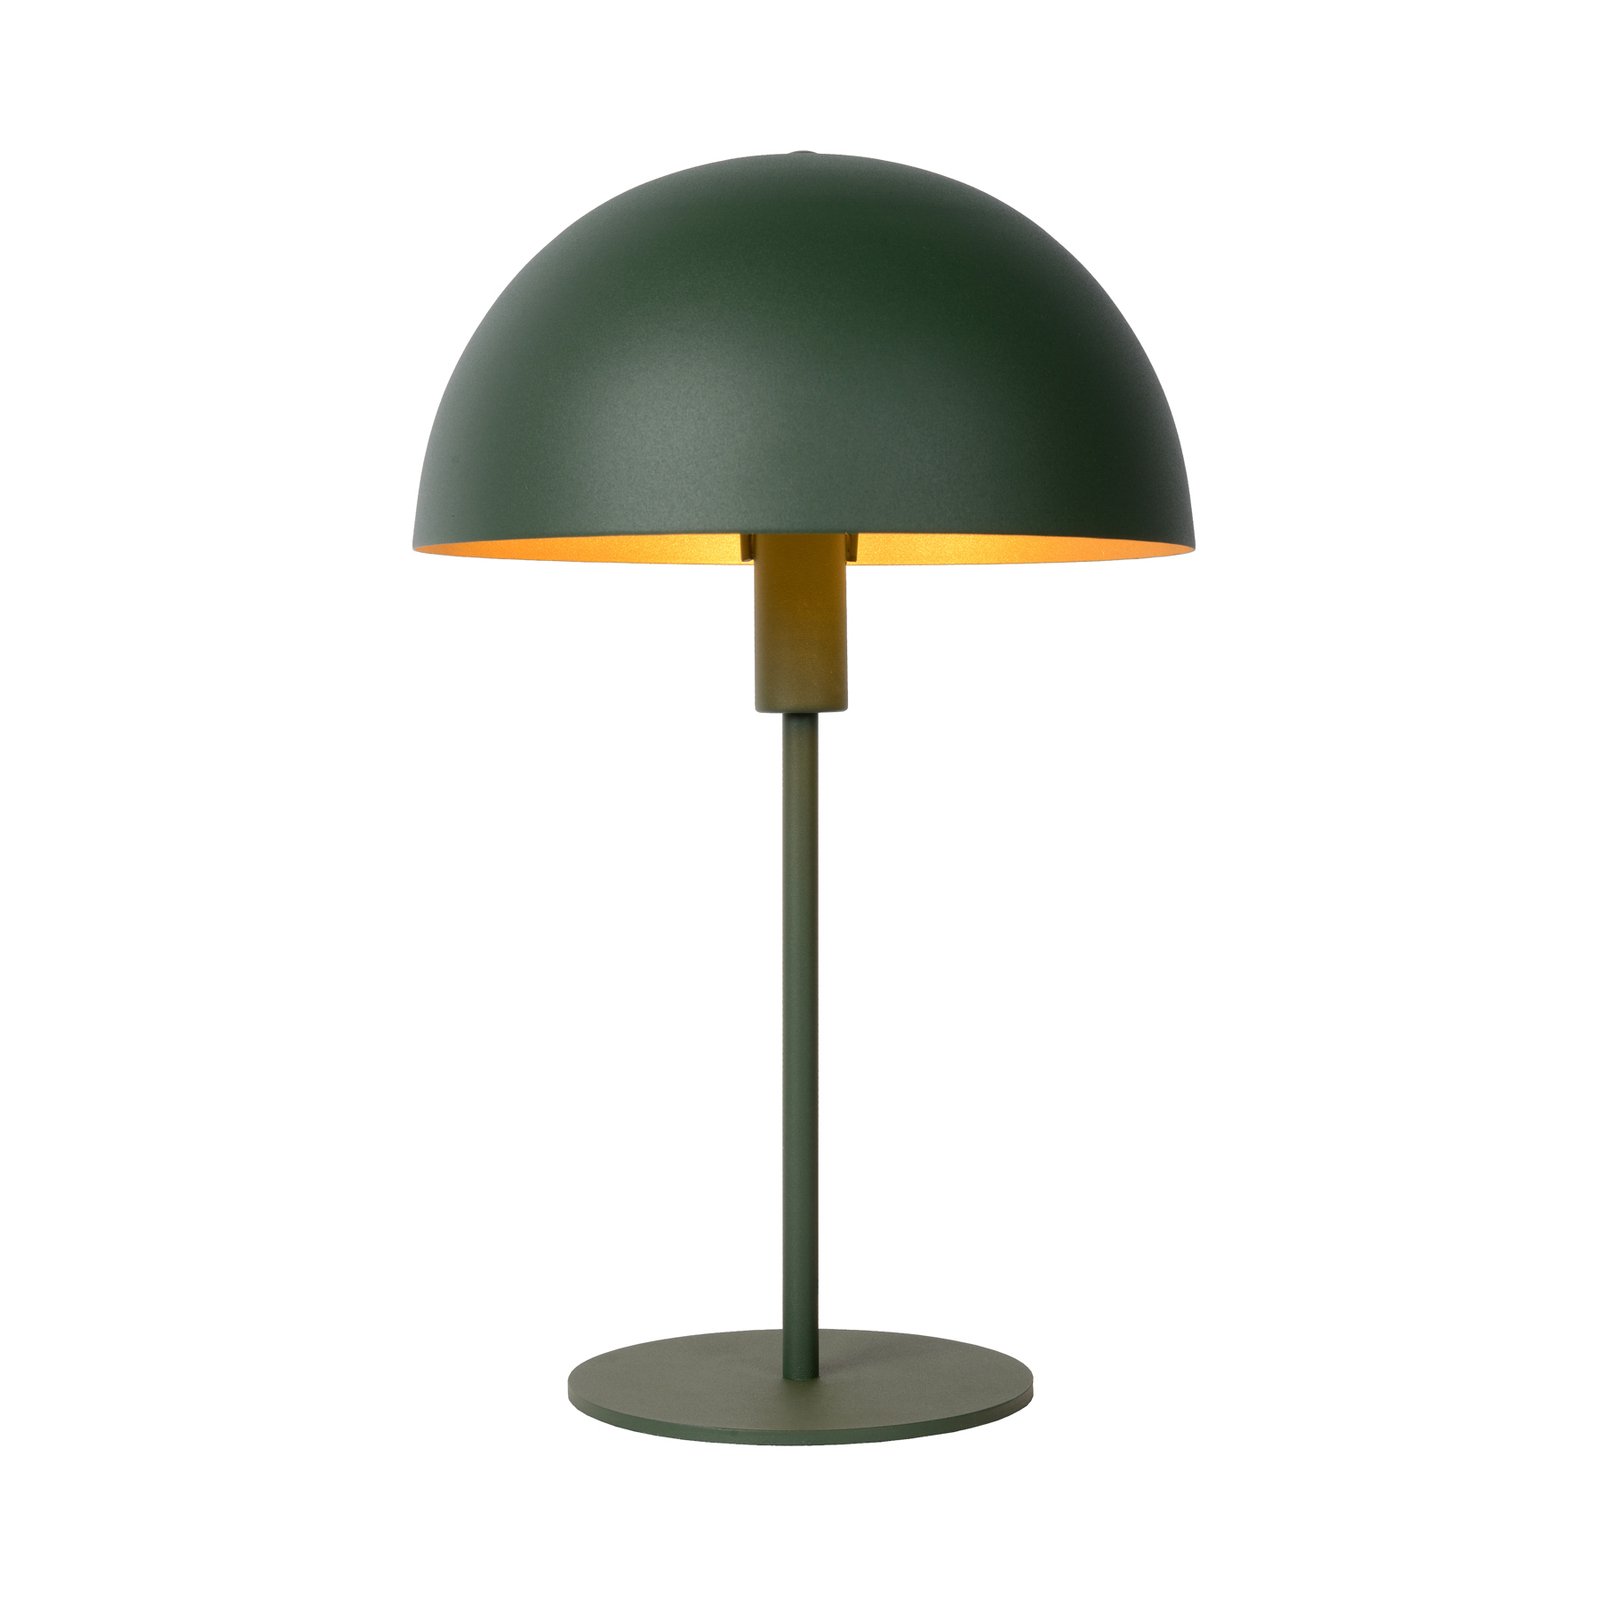 Siemon bordslampa i stål, Ø 25 cm, grön